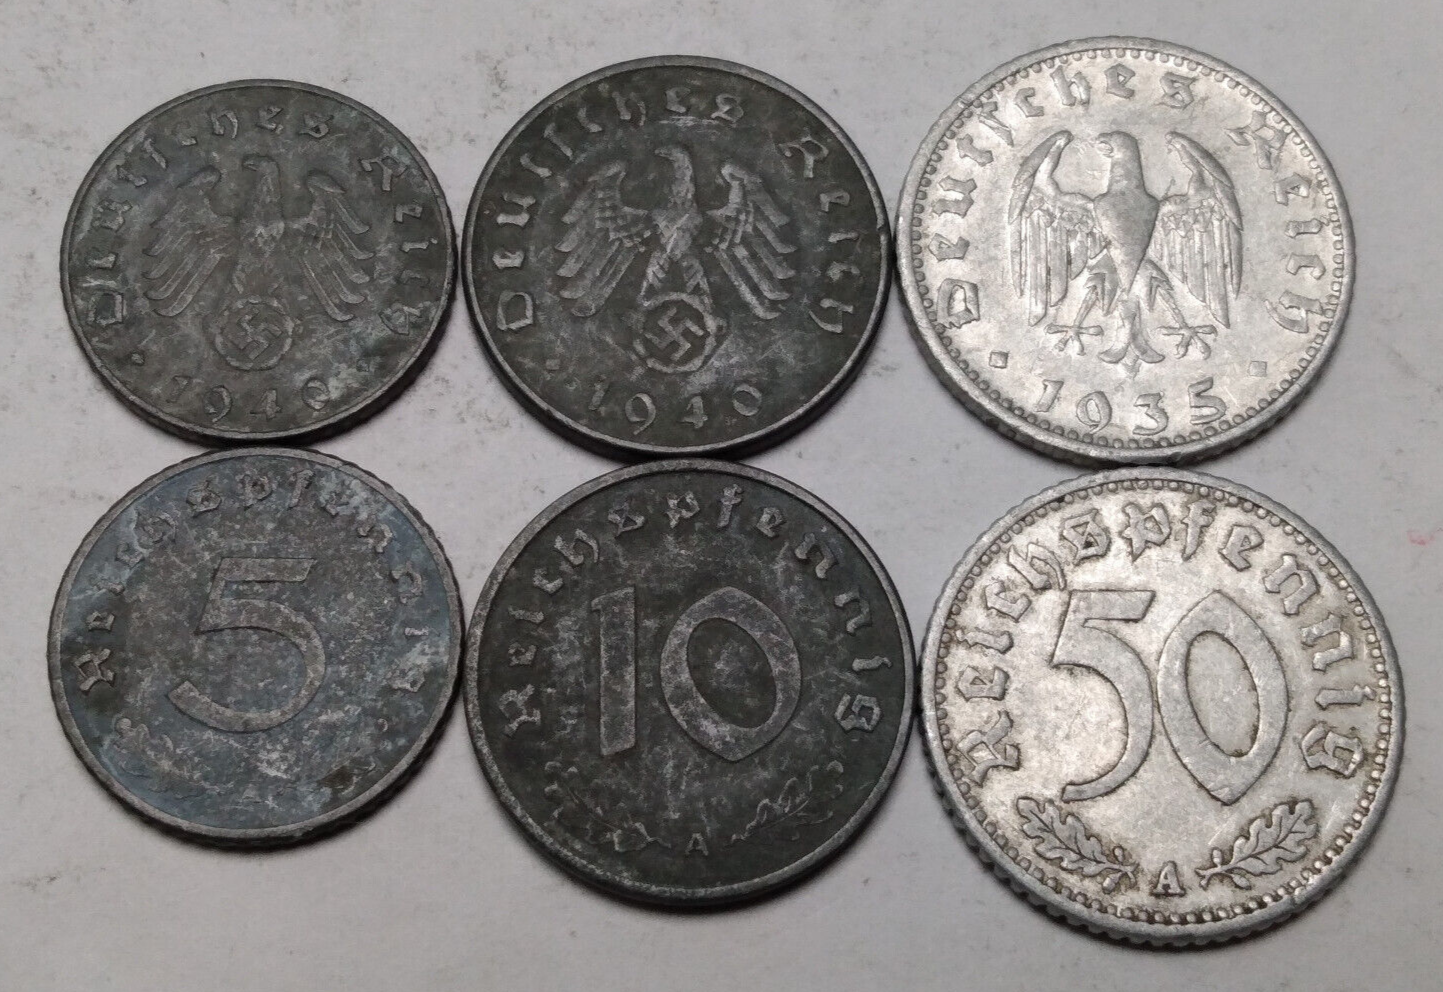 Germany Third Reich Nazi - Lot 3x Coins 5, 10 and 50 Reichspfennig - Please Read Без бренда